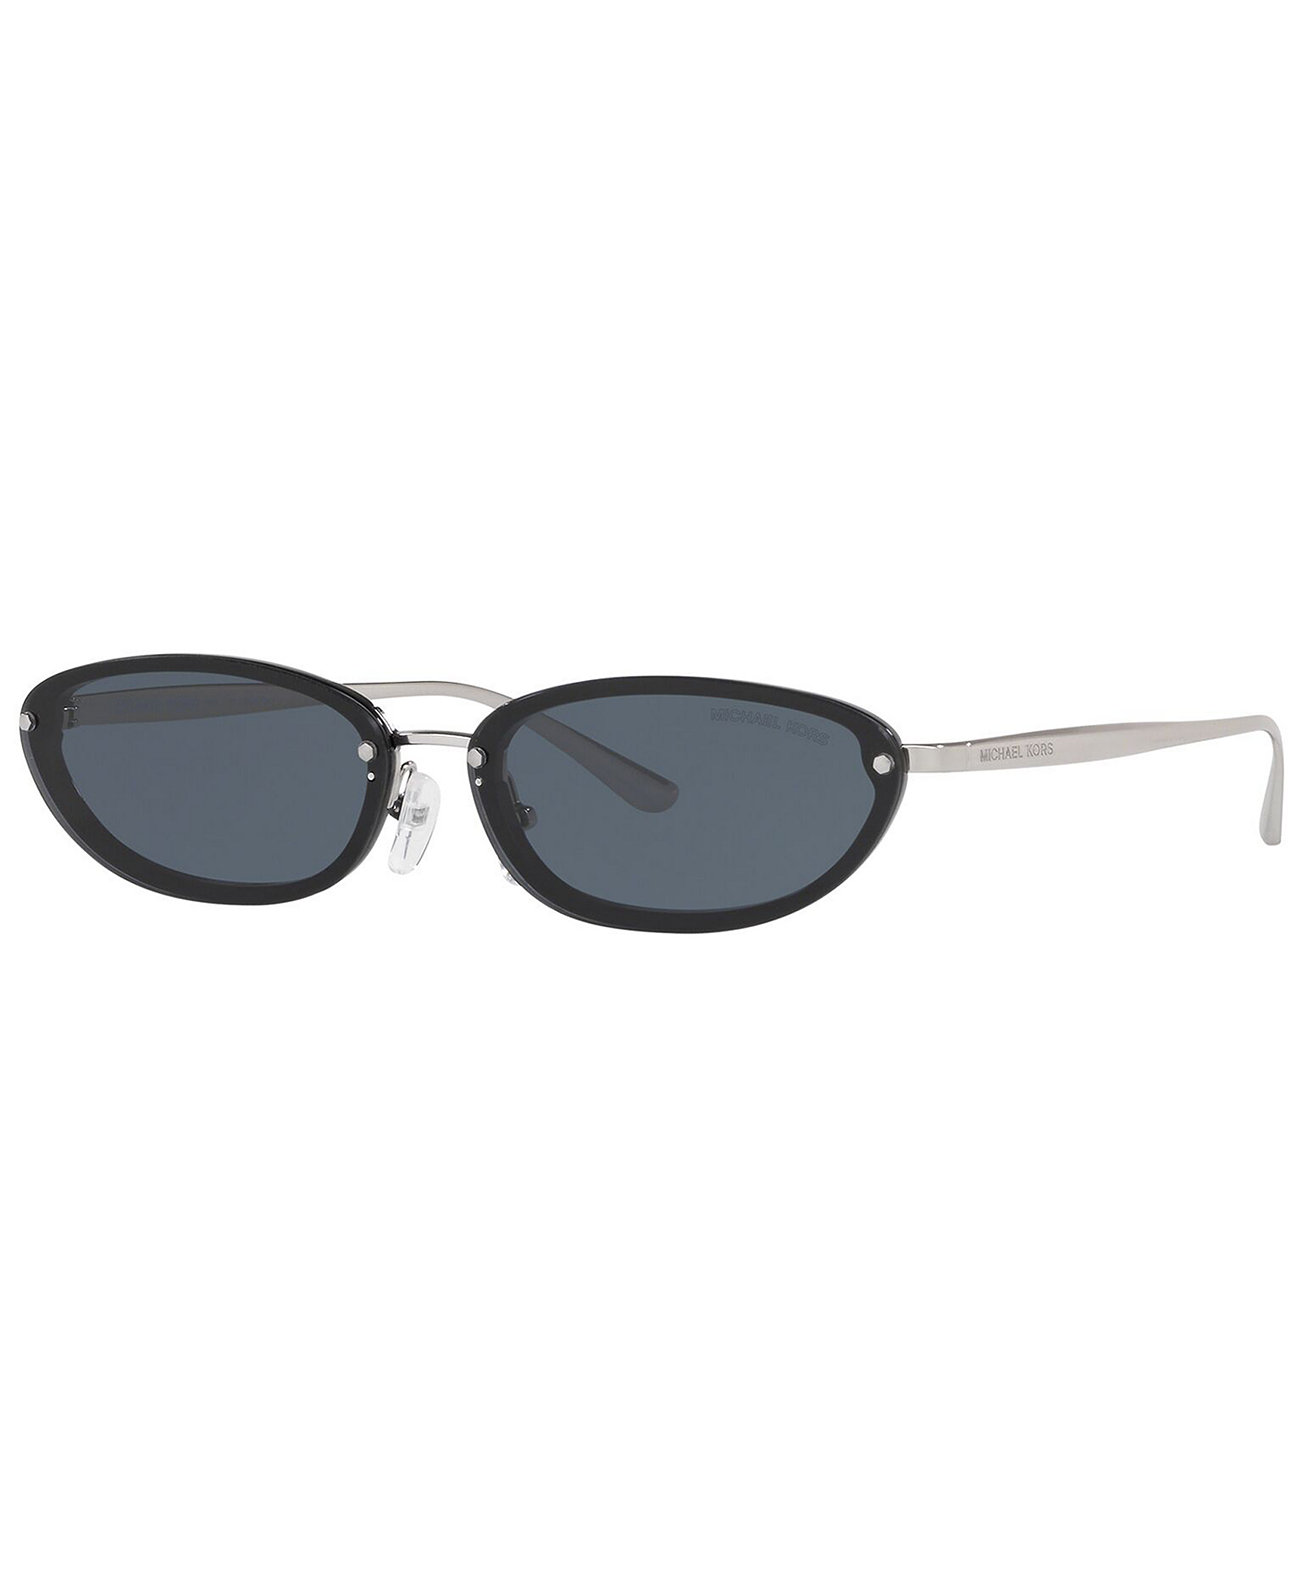 Солнцезащитные очки, MK2104 62 MIRAMAR Michael Kors